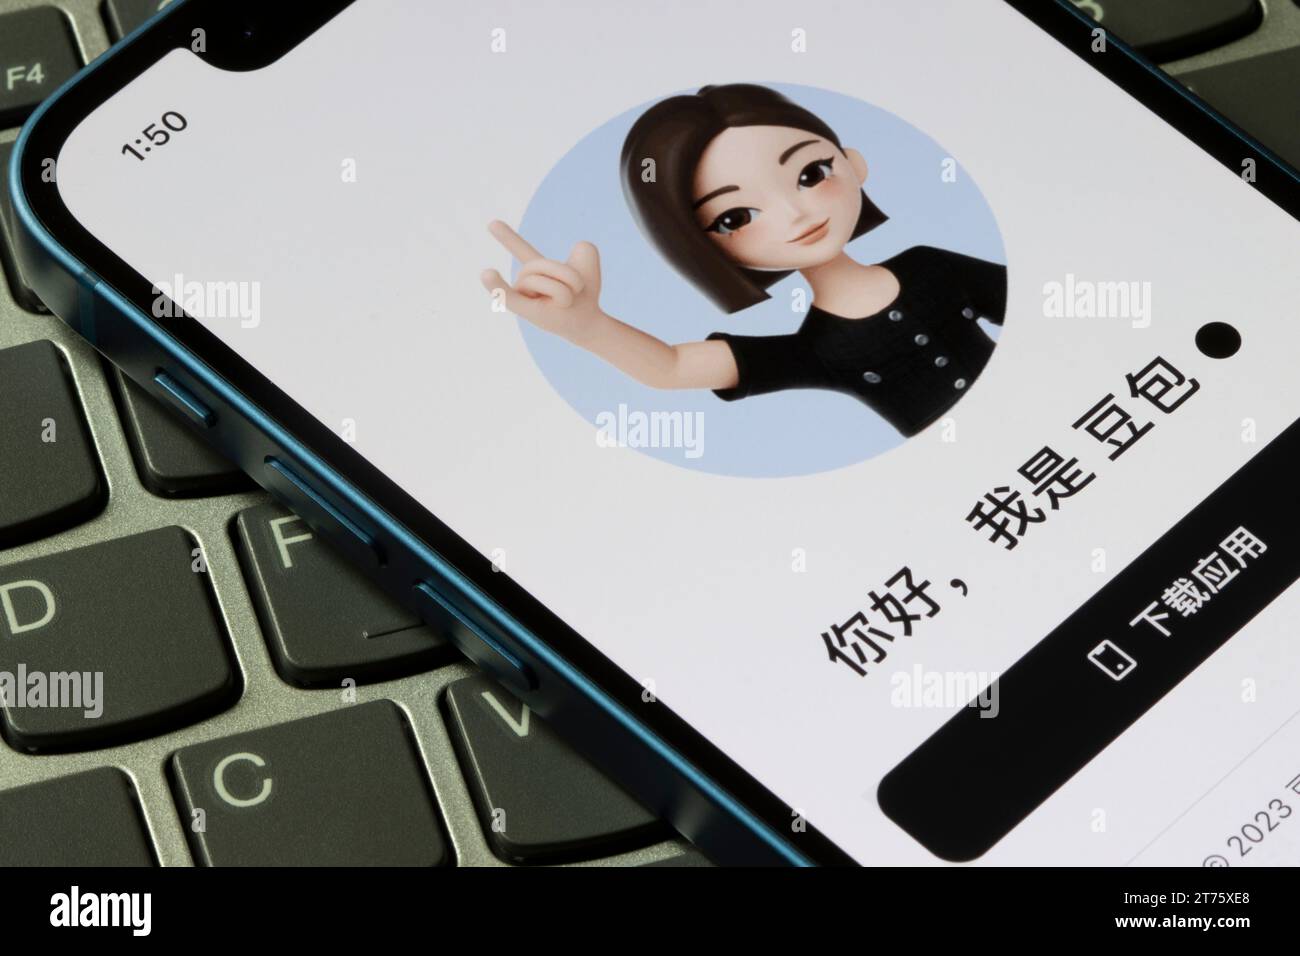 Die Webseite von Doubao, ByteDance's KI-Chatbot, ist auf einem iPhone zu sehen. Chinas aufstrebende KI-Industrie hat seit ... Milliarden Dollar in diesen Bereich investiert Stockfoto